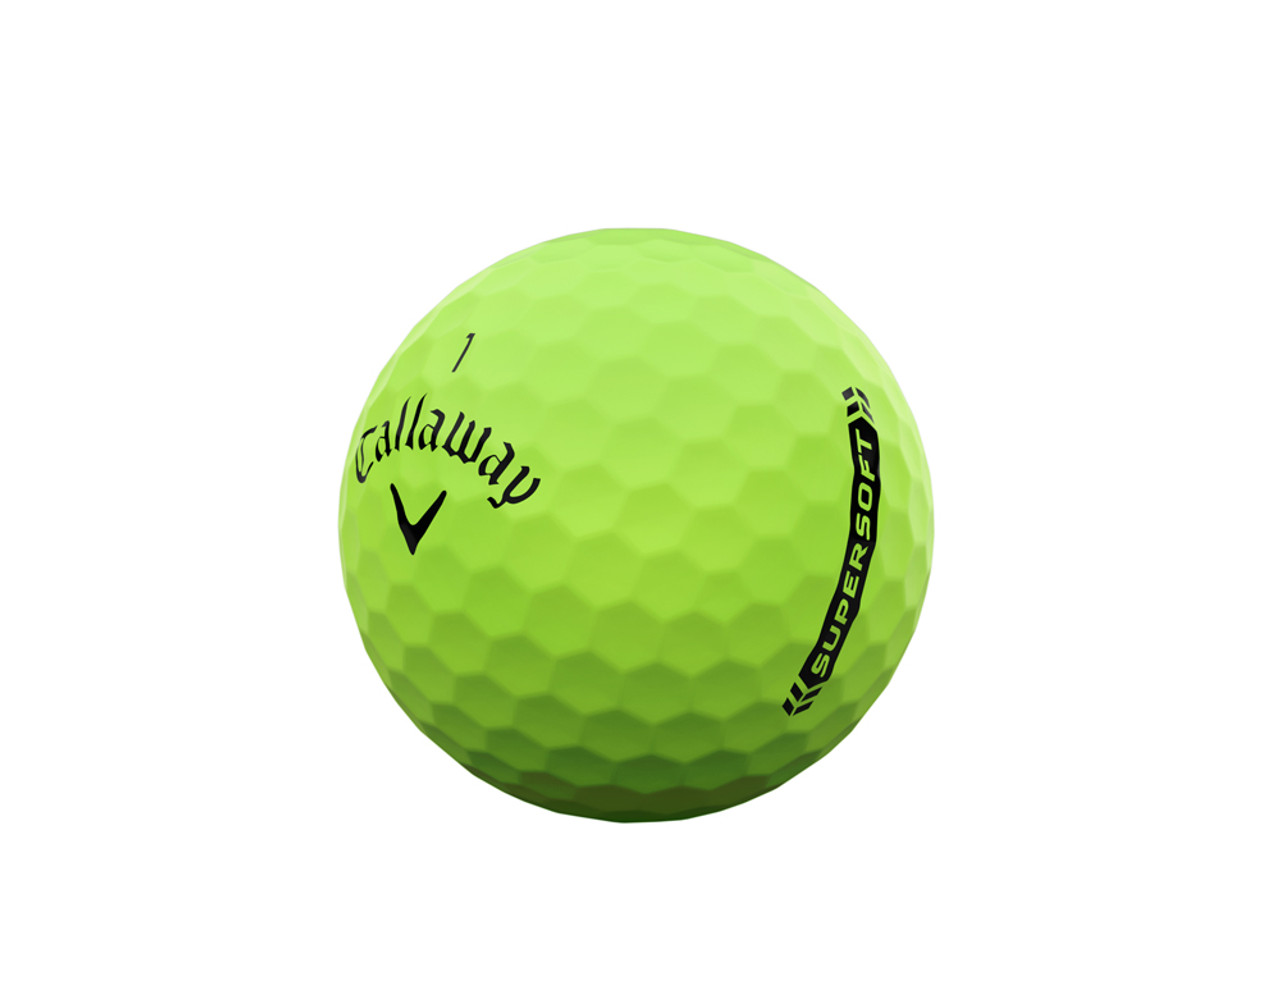 Callaway Supersoft Golf Ball 2023 Review